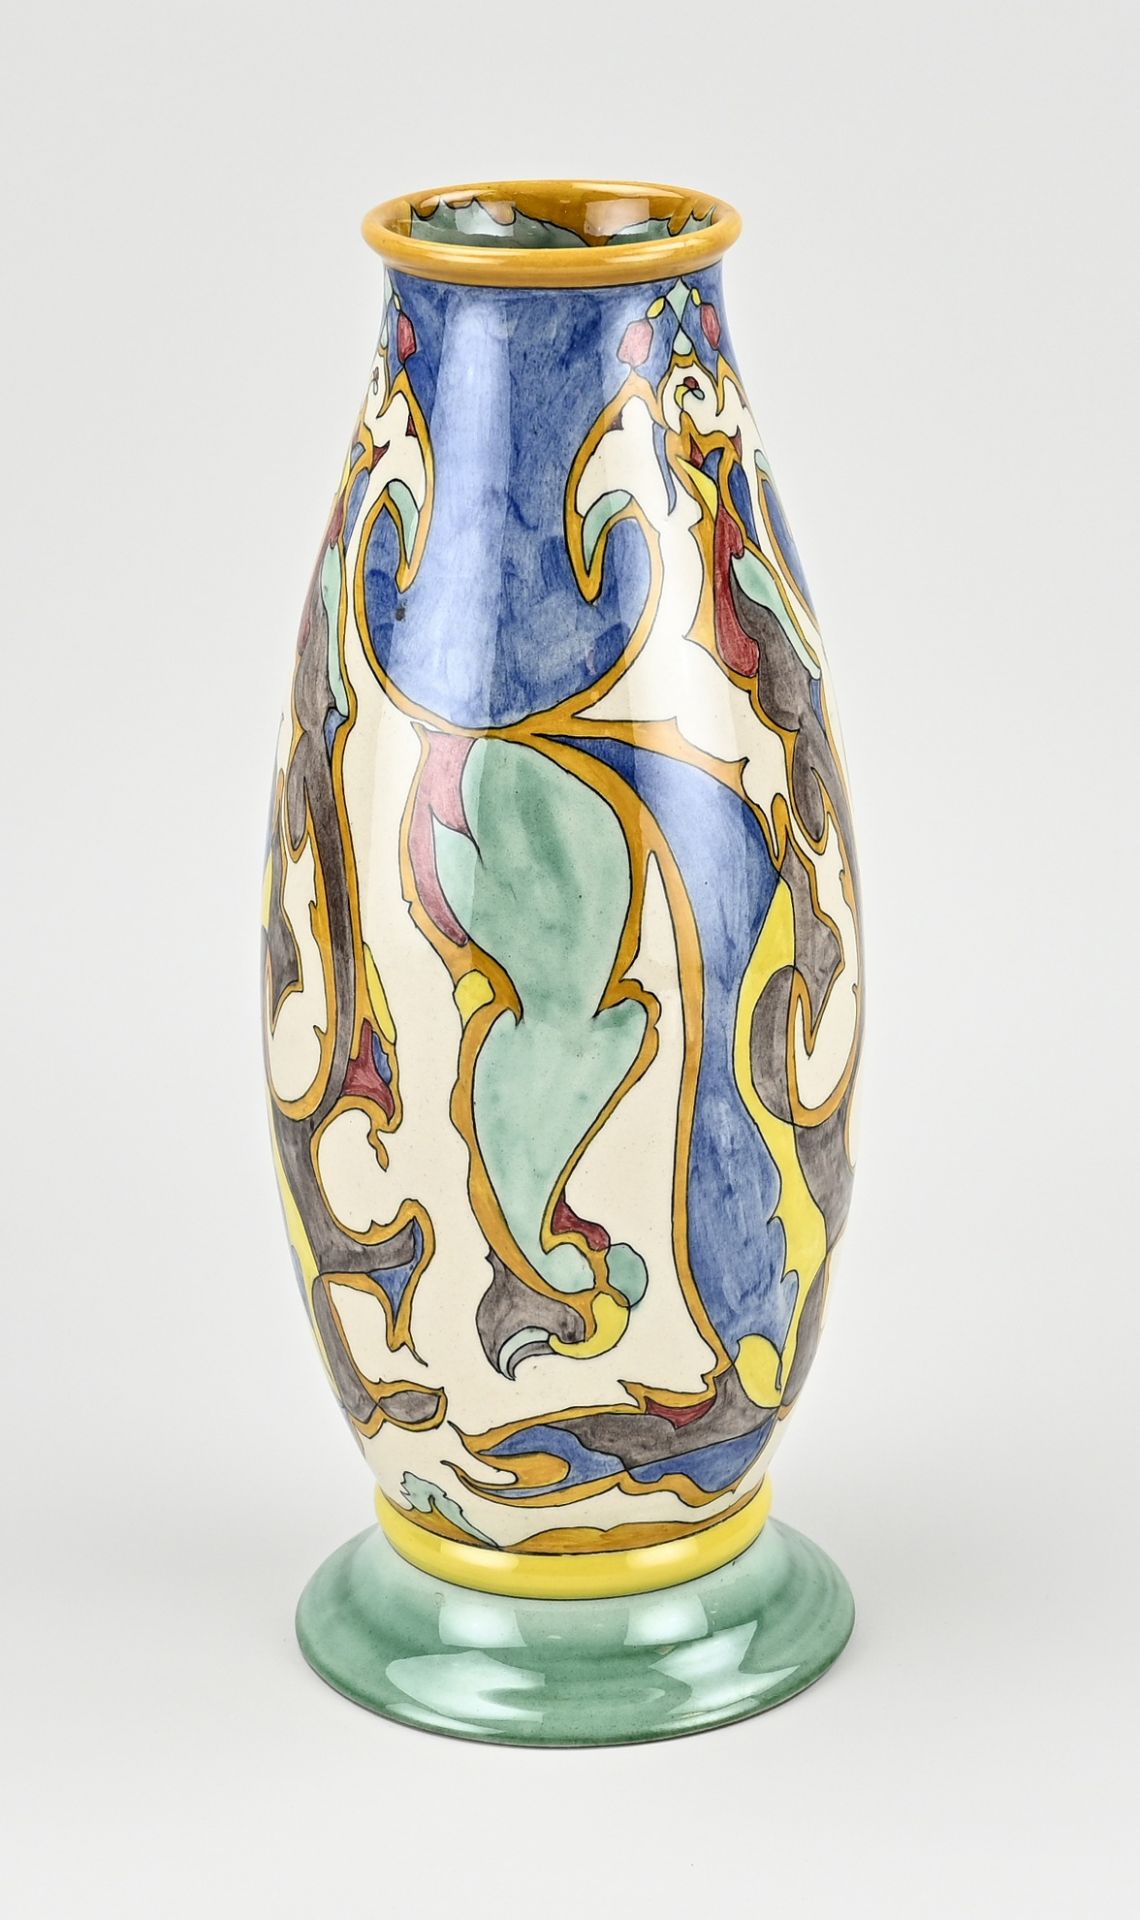 Colenbrander/Ram vase 'Naaloop' - Image 2 of 3